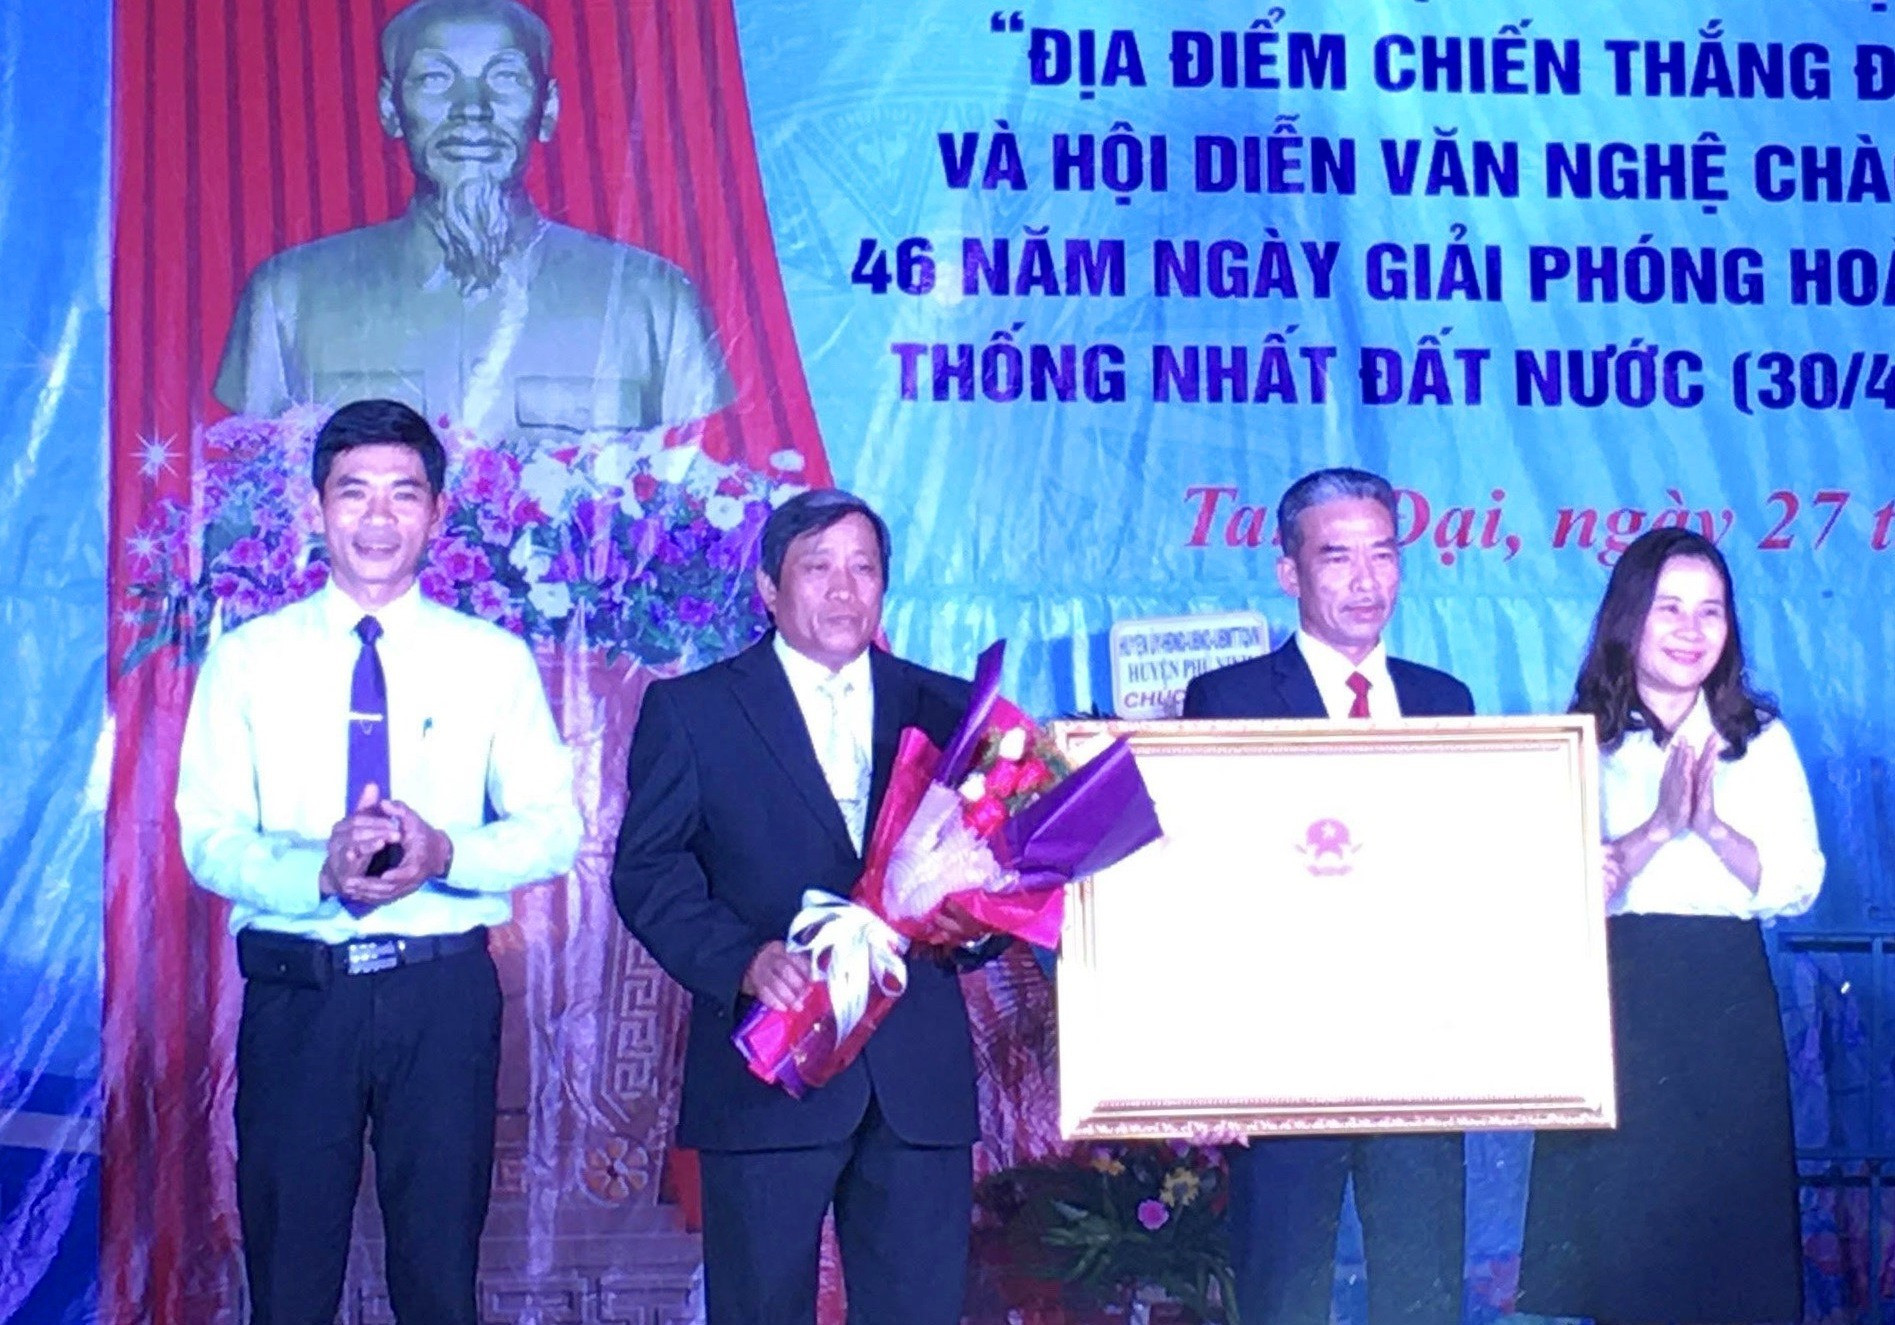 Lãnh đạo Sở VHTT-DL và huyện Phú Ninh trao Bằng di tích lịch sử cấp tỉnh địa điểm chiến thắng Chóp Chài cho lãnh đạo địa phương. Ảnh: H.C